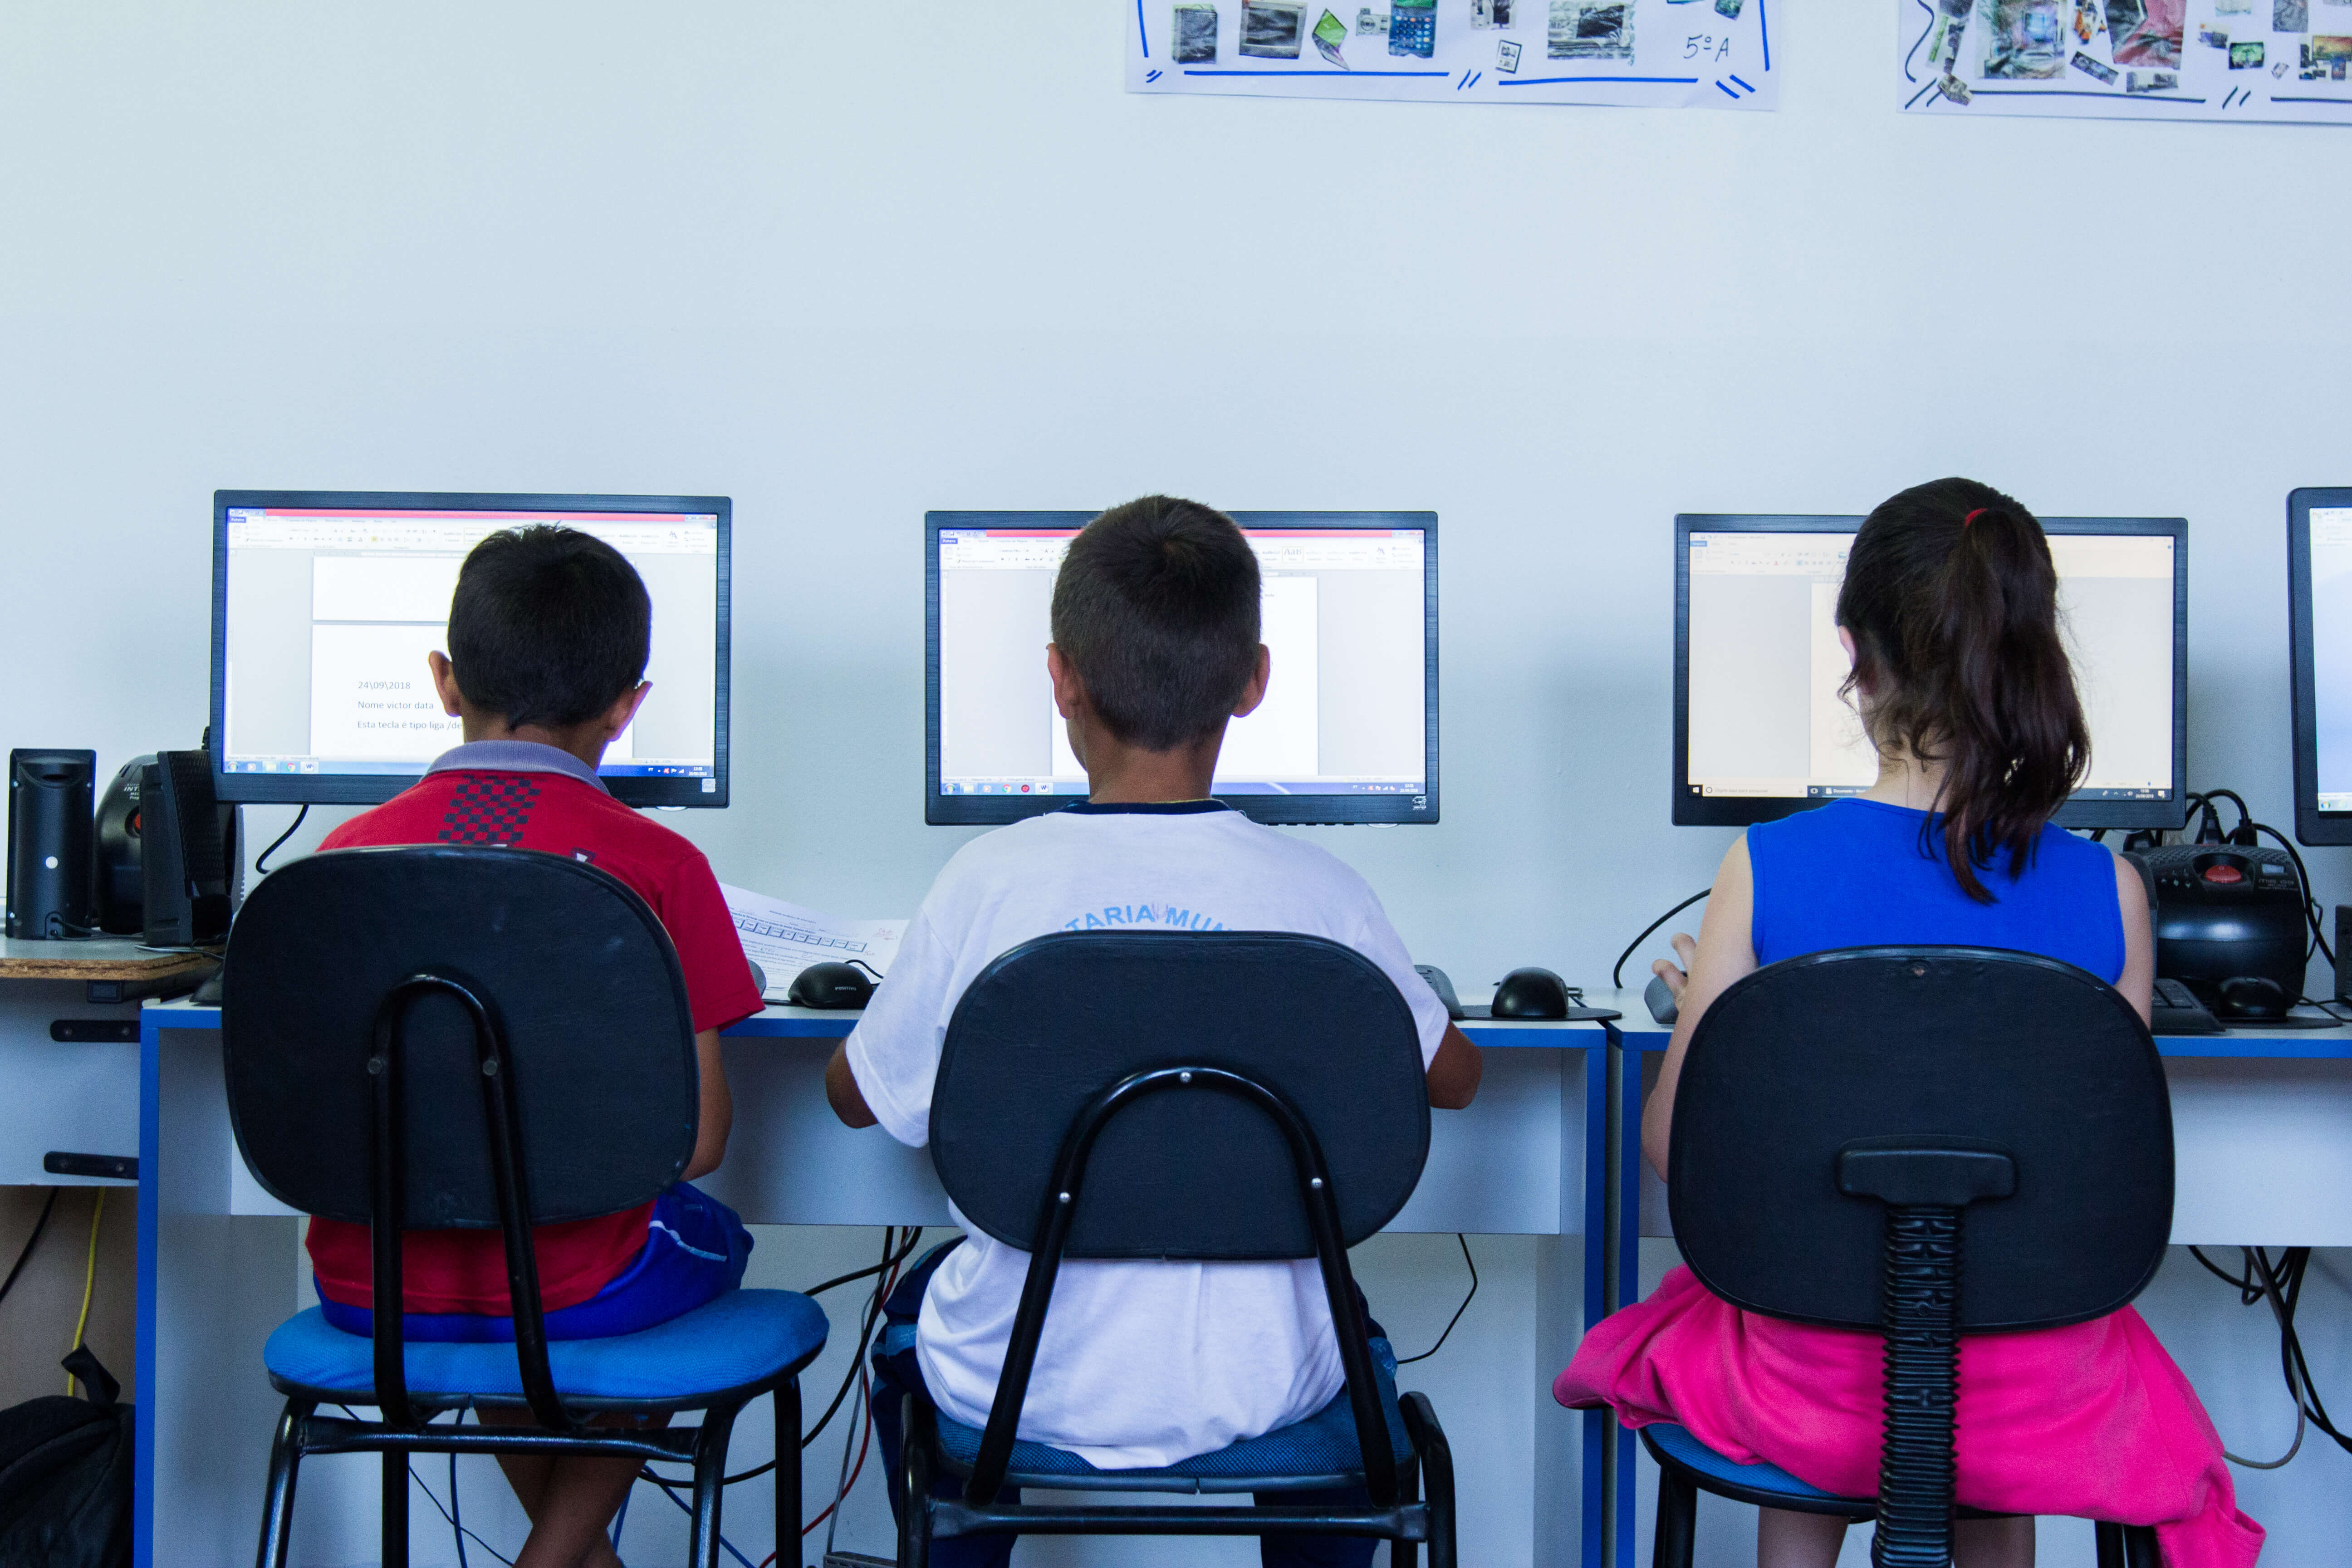 5G poderá levar internet às escolas ainda desconectadas